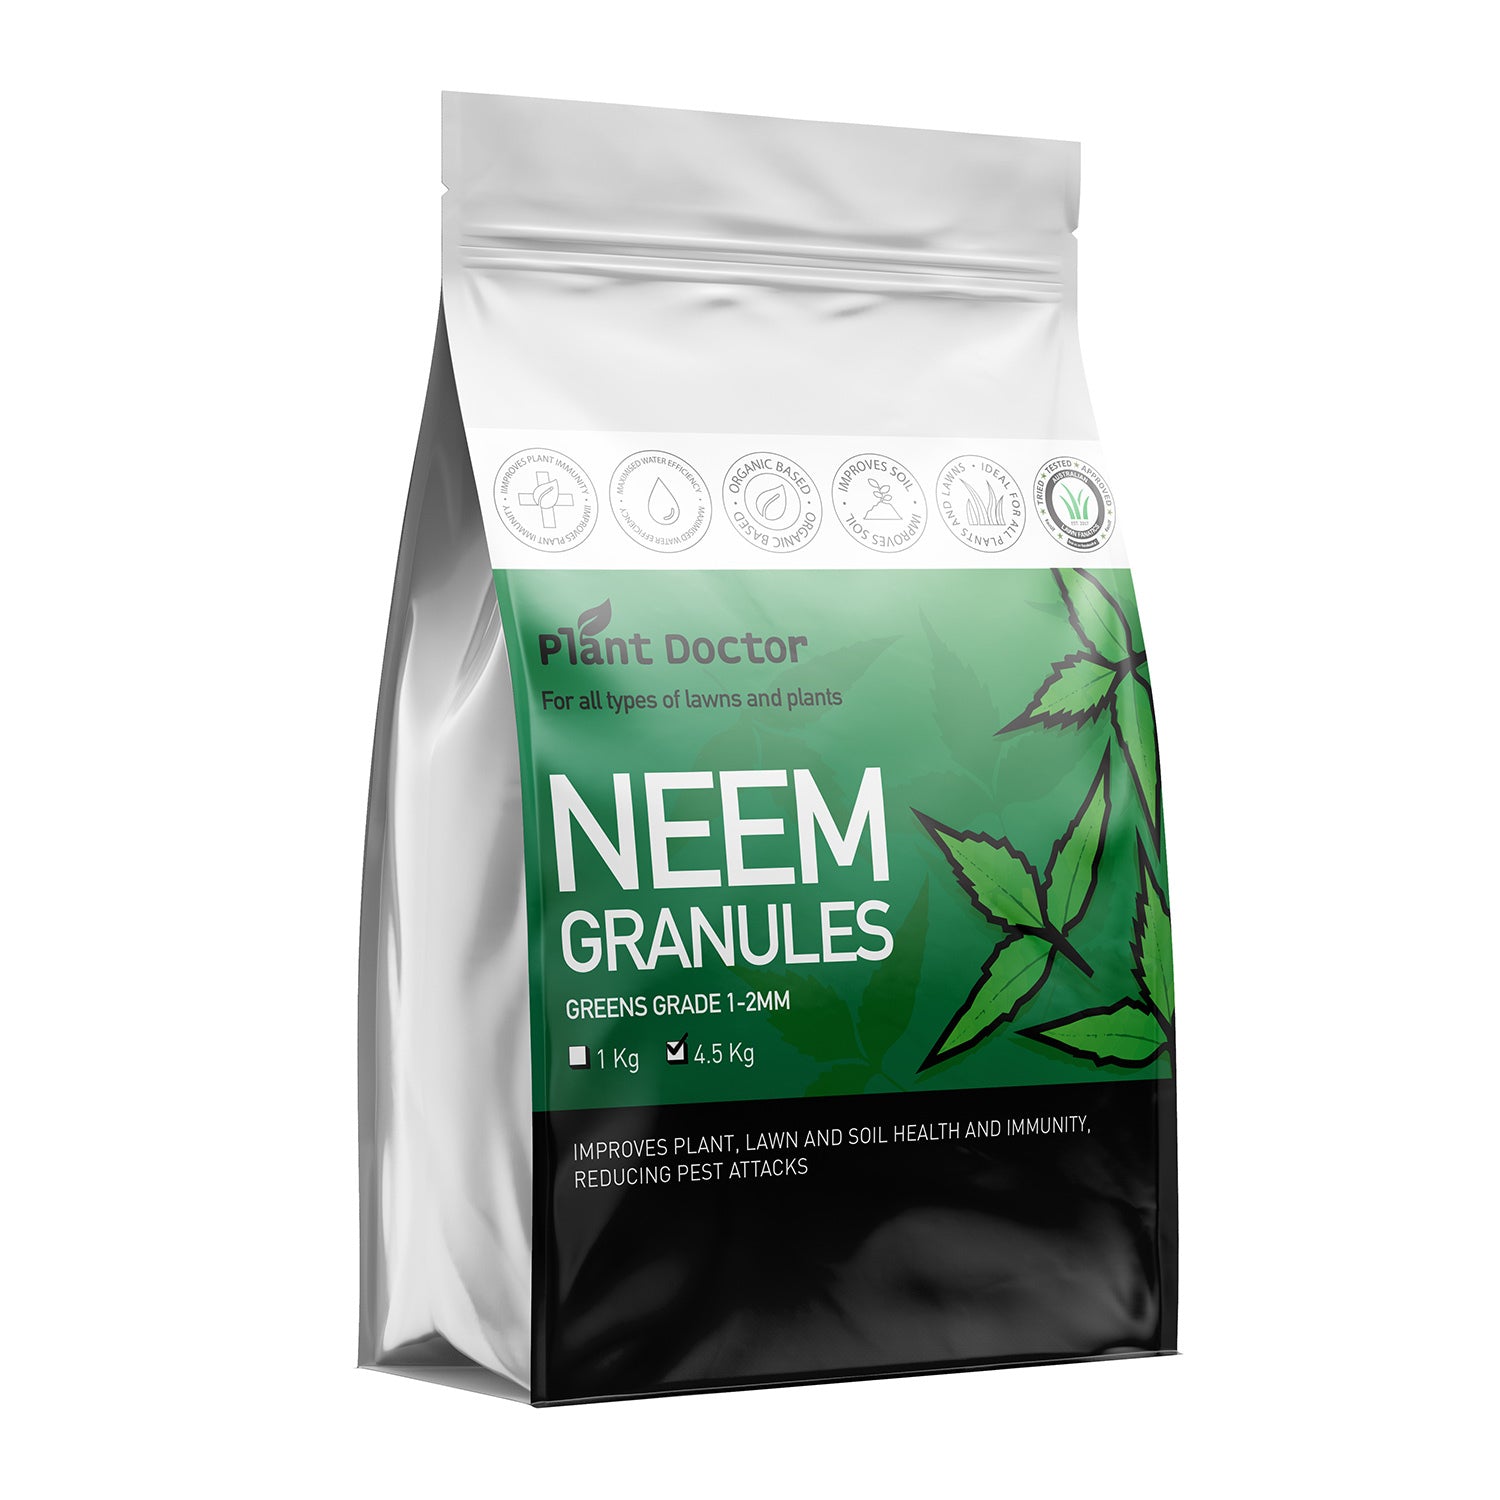 Plant Doctor Neem Fertiliser Granules - 1kg